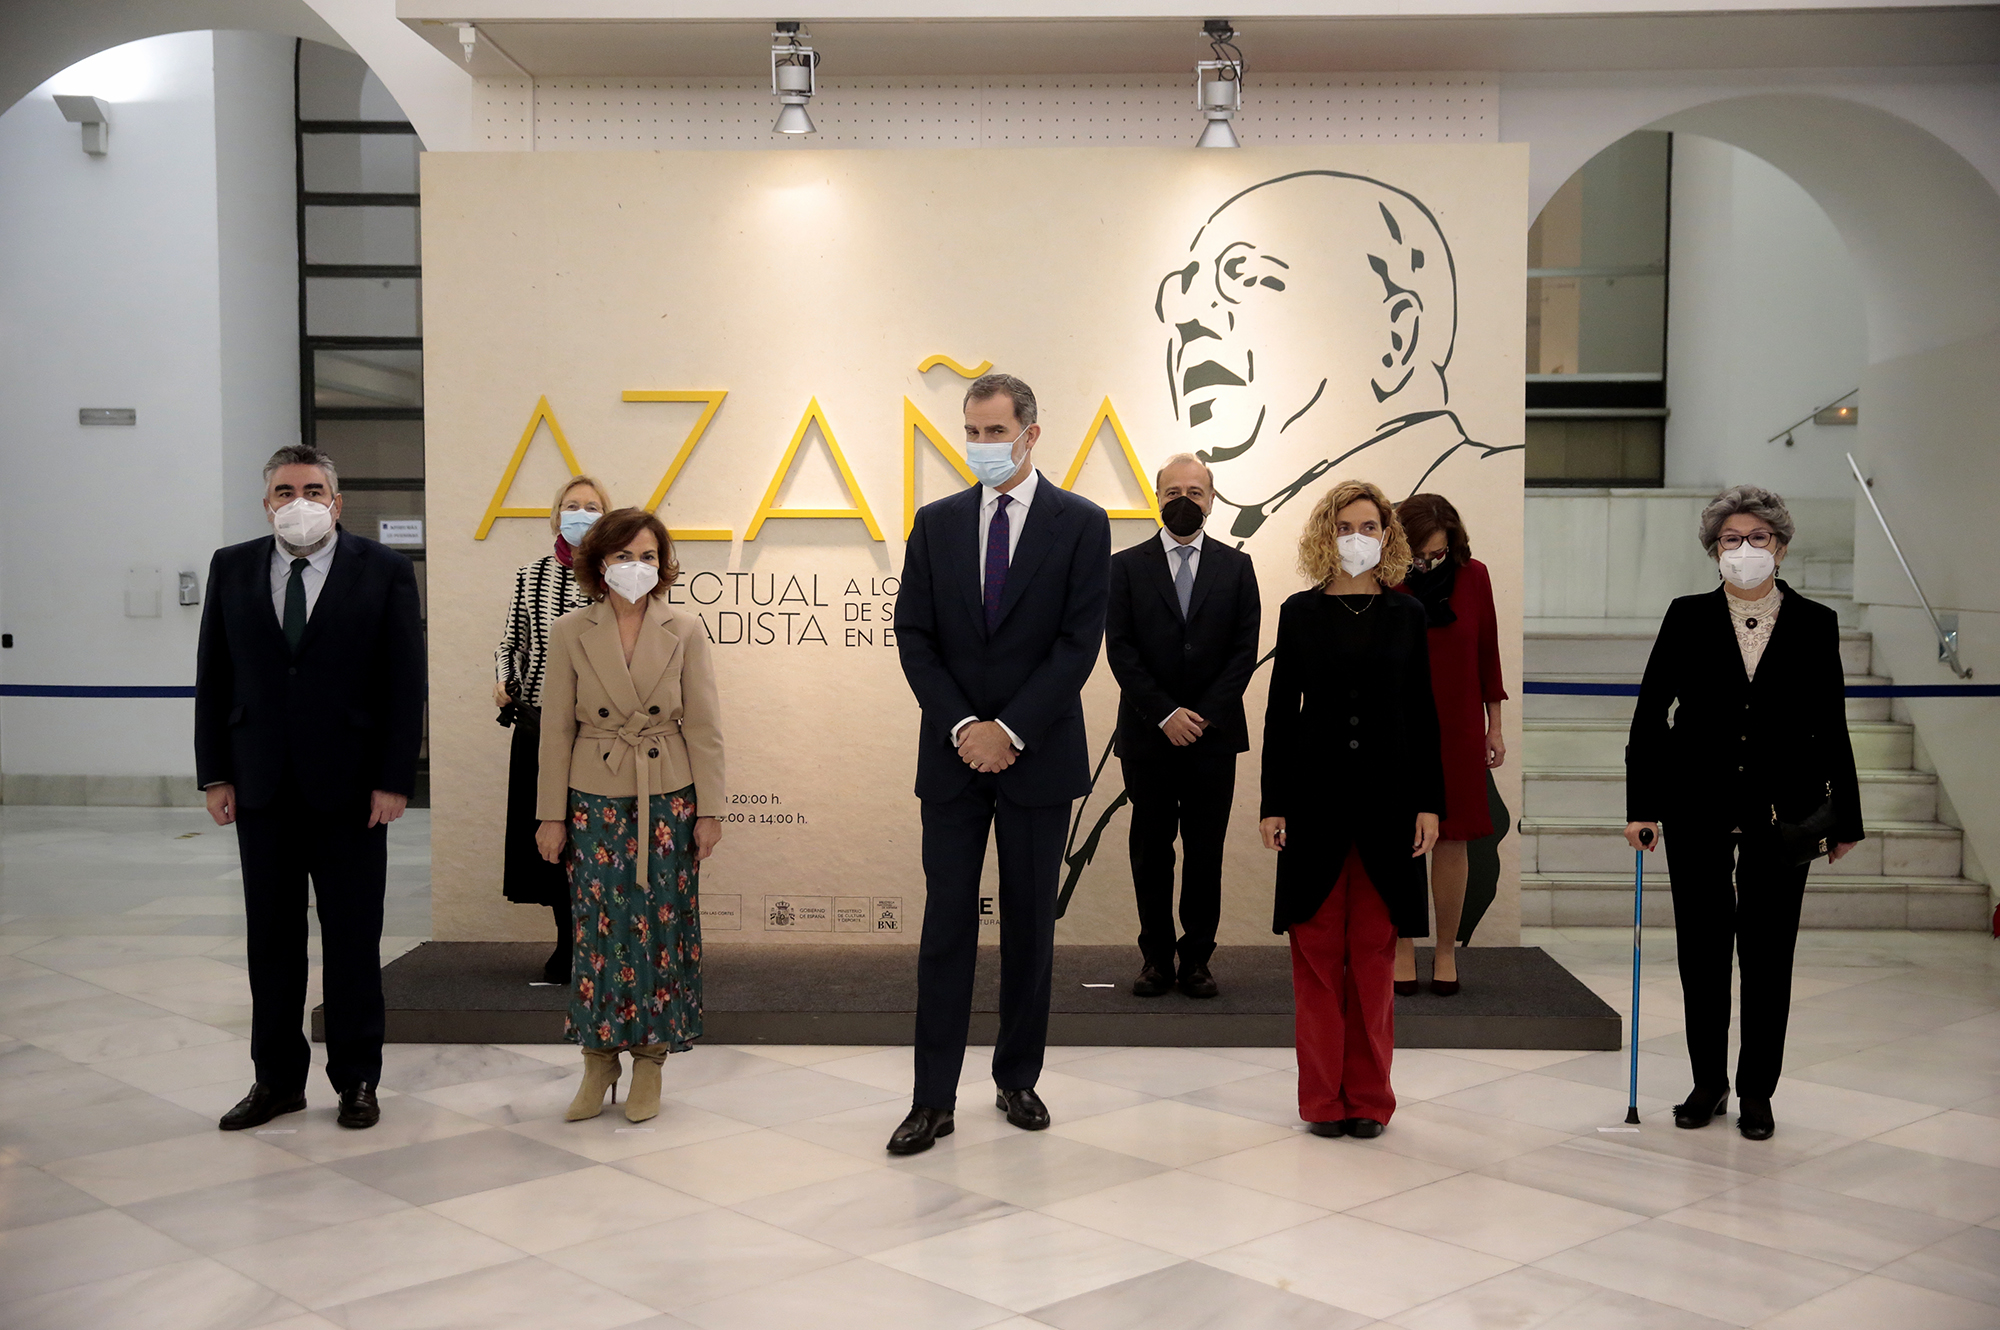 Calvo acompaña al Rey Felipe VI en la inauguración de la exposición conmemorativa de Manuel Azaña, el presidente de la II República